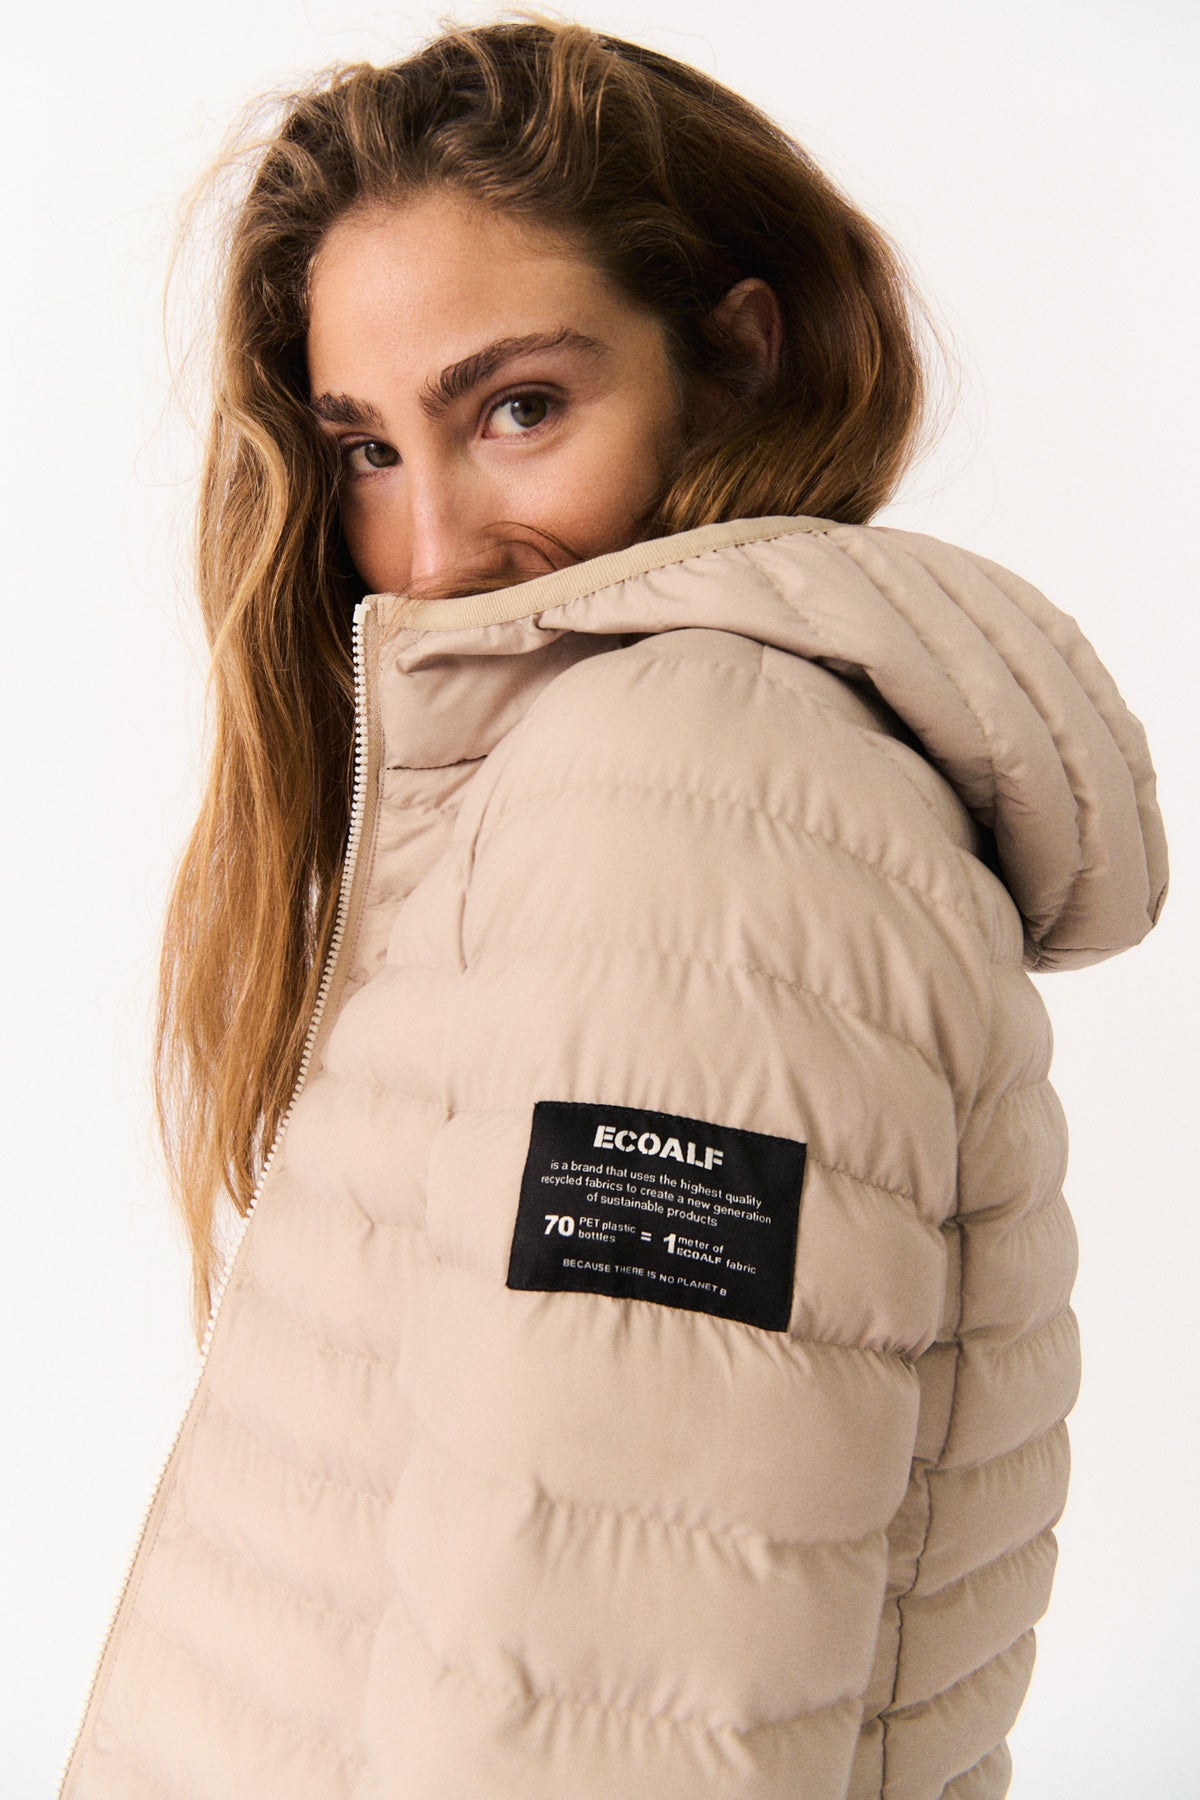 plumifero superdry chaquetas de mujer invierno  Ropa de invierno mujer,  Outfit mujer invierno, Moda